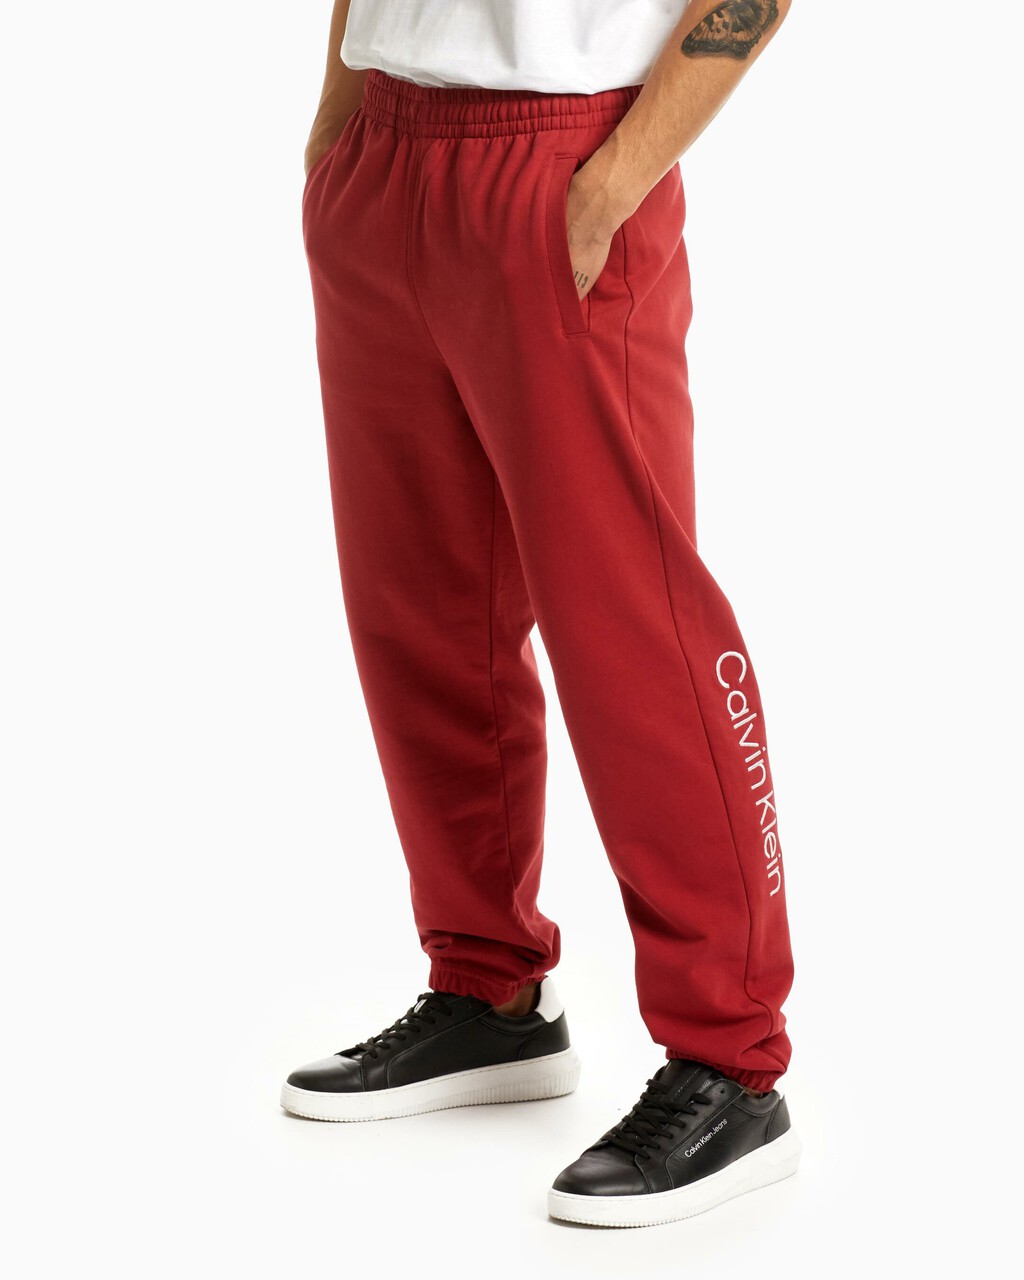 Standard Logo 束腳褲, KARANDA RED-640, hi-res